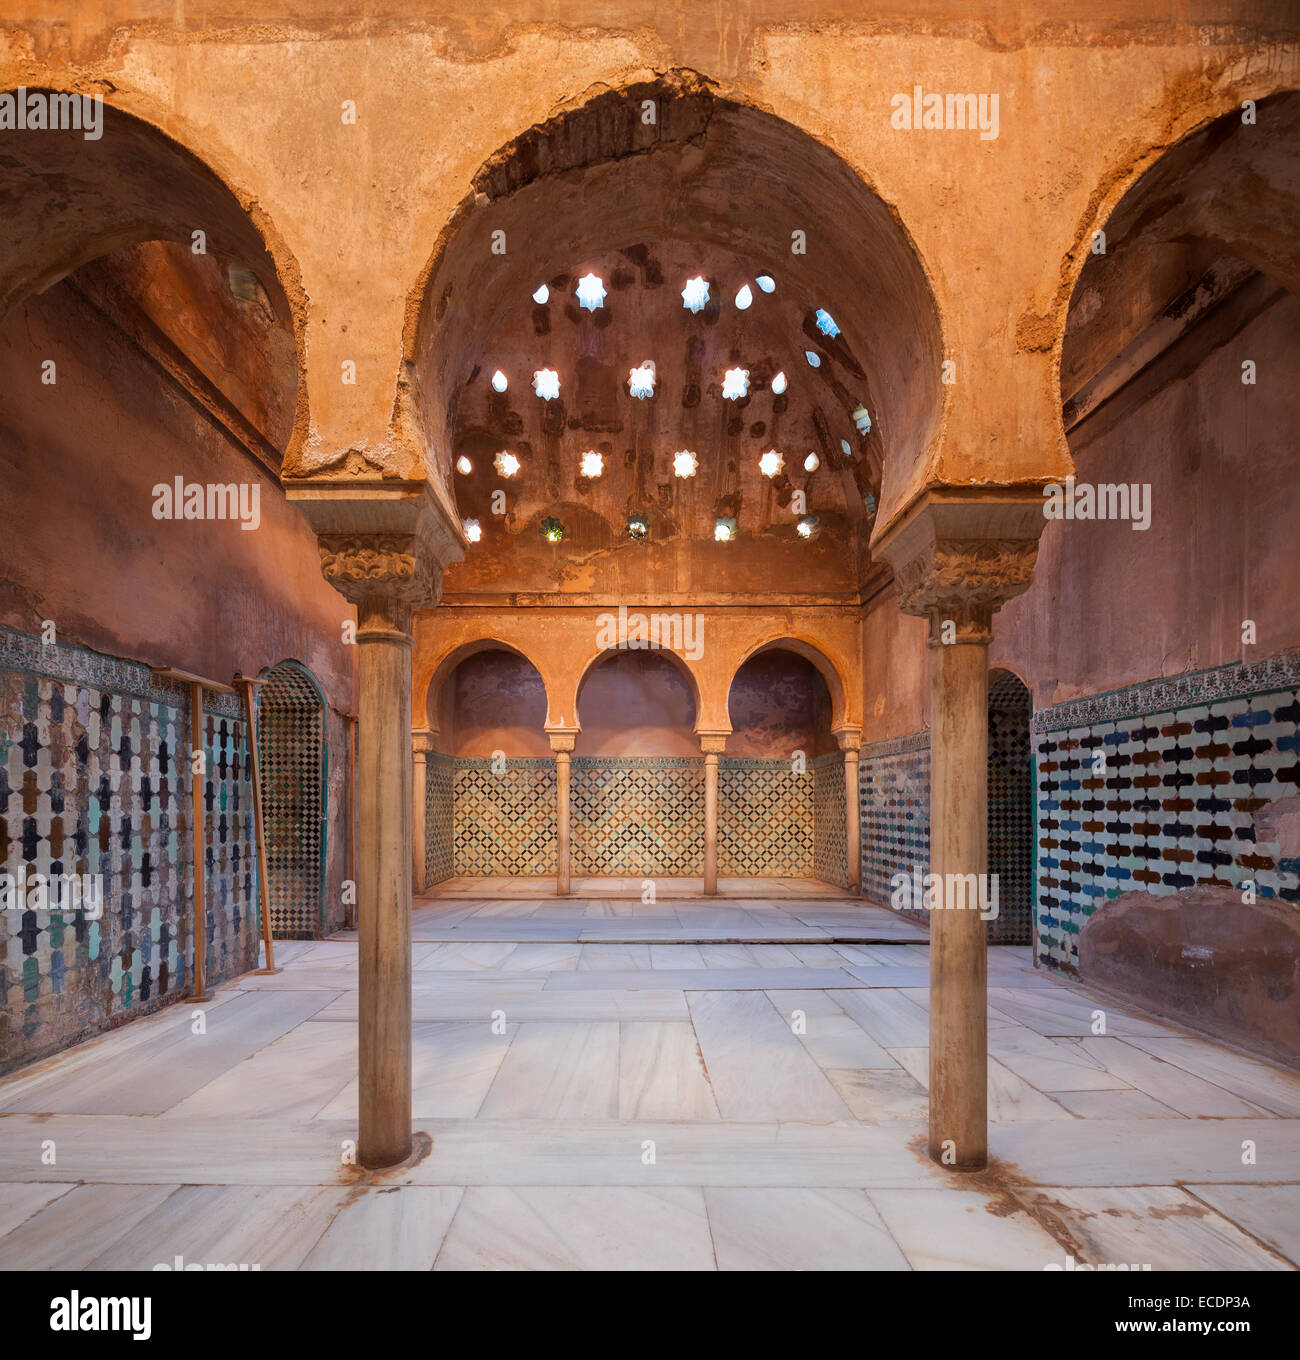 Hamam, Hamam, Arabische Bäder in der Alhambra Palast Granada Spanien. Stockfoto